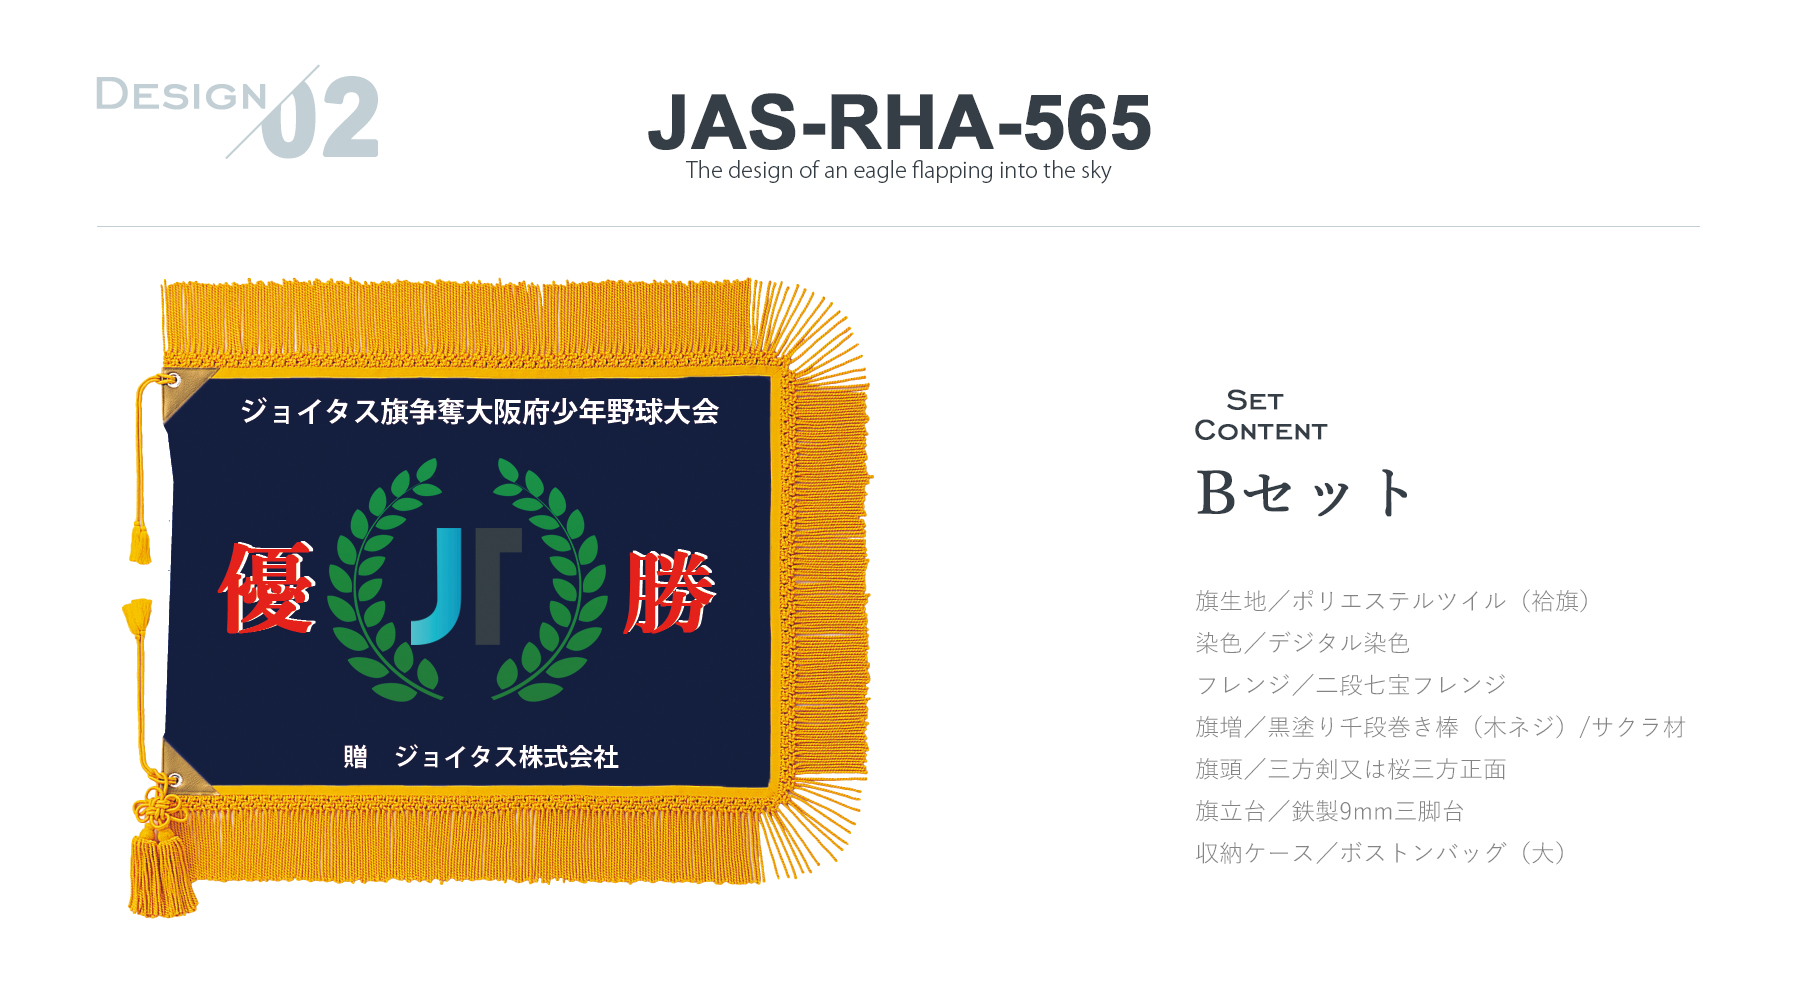 JAS-RHA-565 オリジナルフルカラー優勝旗のご紹介